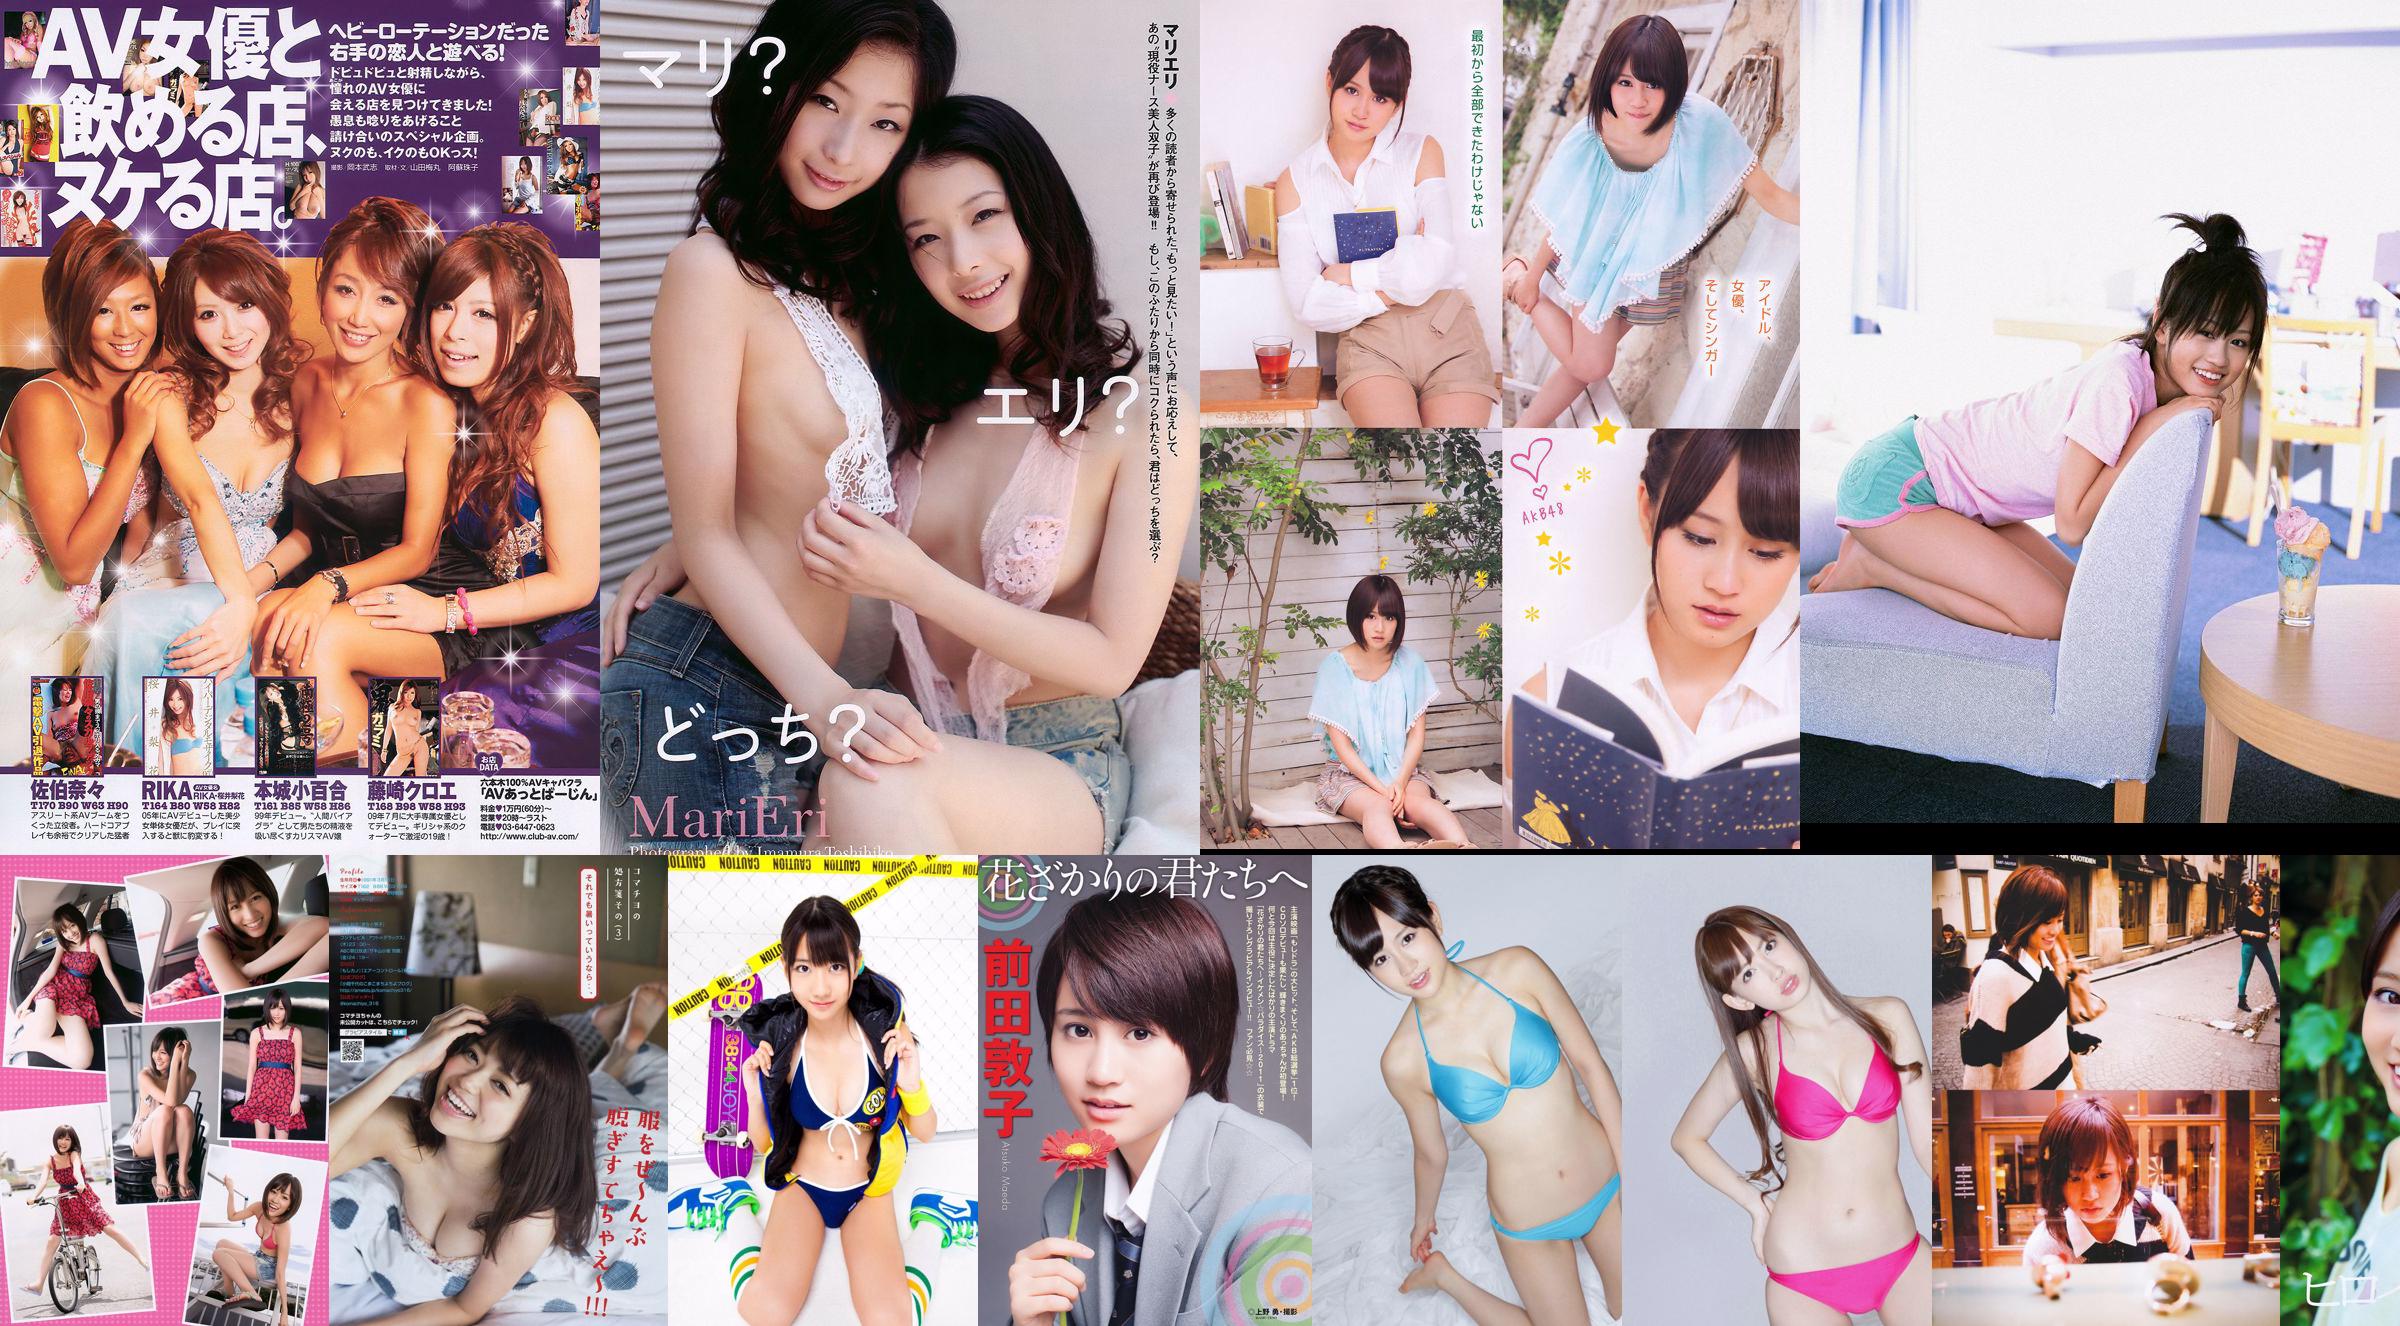 Atsuko Maeda Rima Nishizaki Anna Konno Mitsu Dan [Wöchentlicher Playboy] 2012 Nr. 27 Foto Mitsu Dan No.720ba7 Seite 20